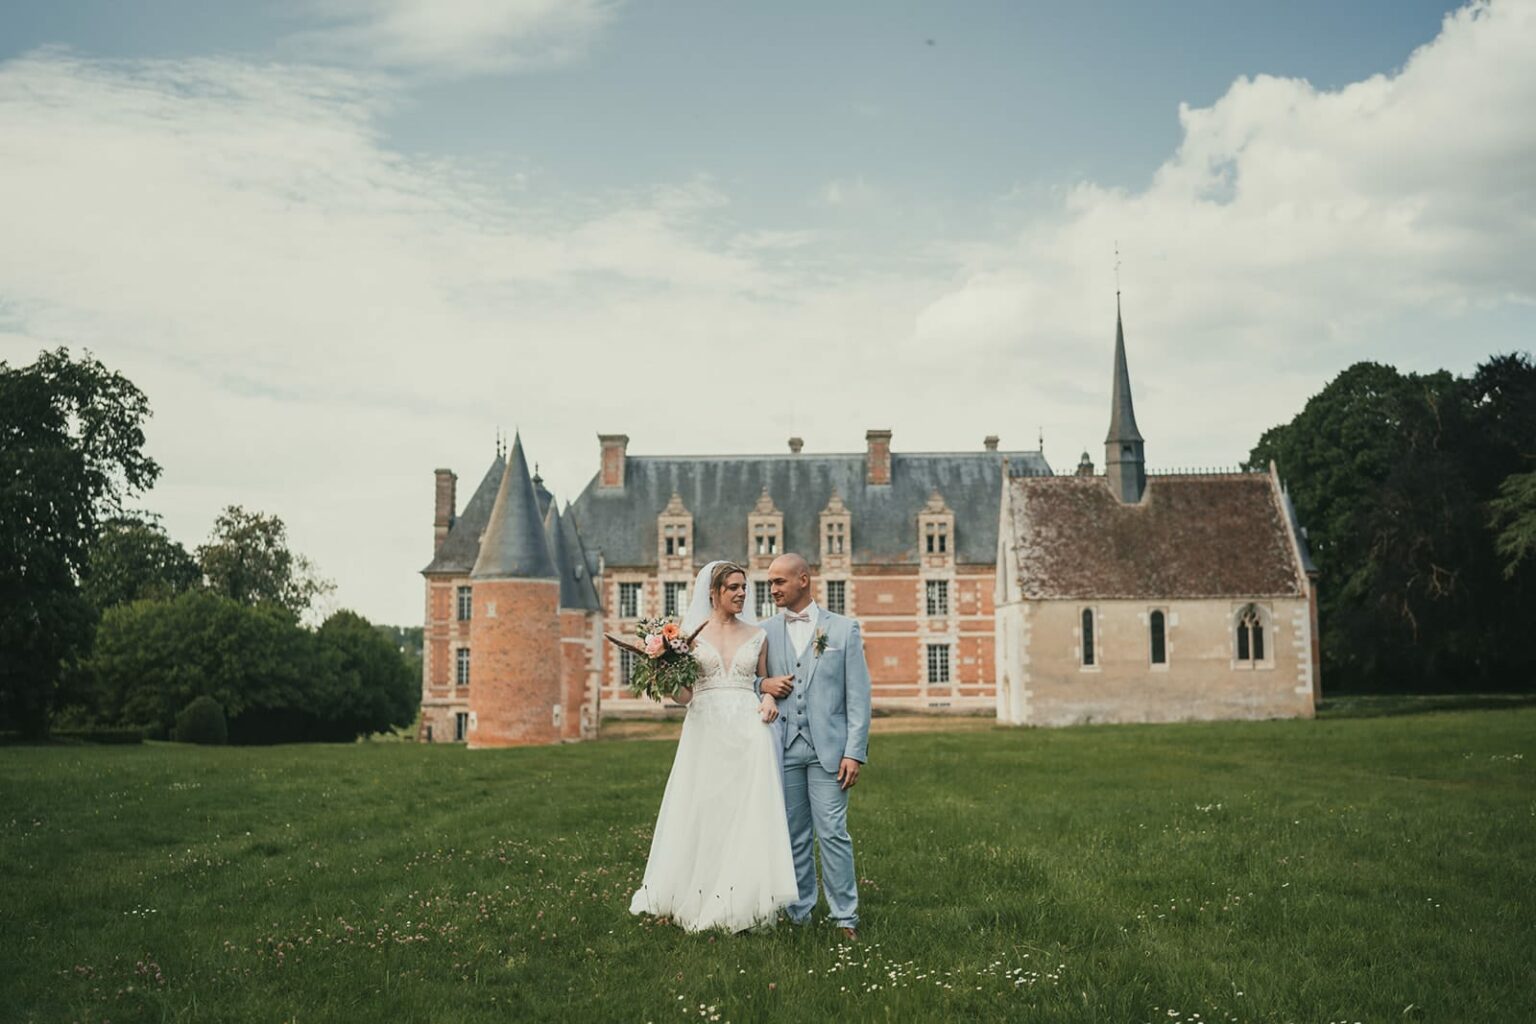 Le mariage de Sonia et Tanguy – par Alain Leprevost photographe vidéaste -807